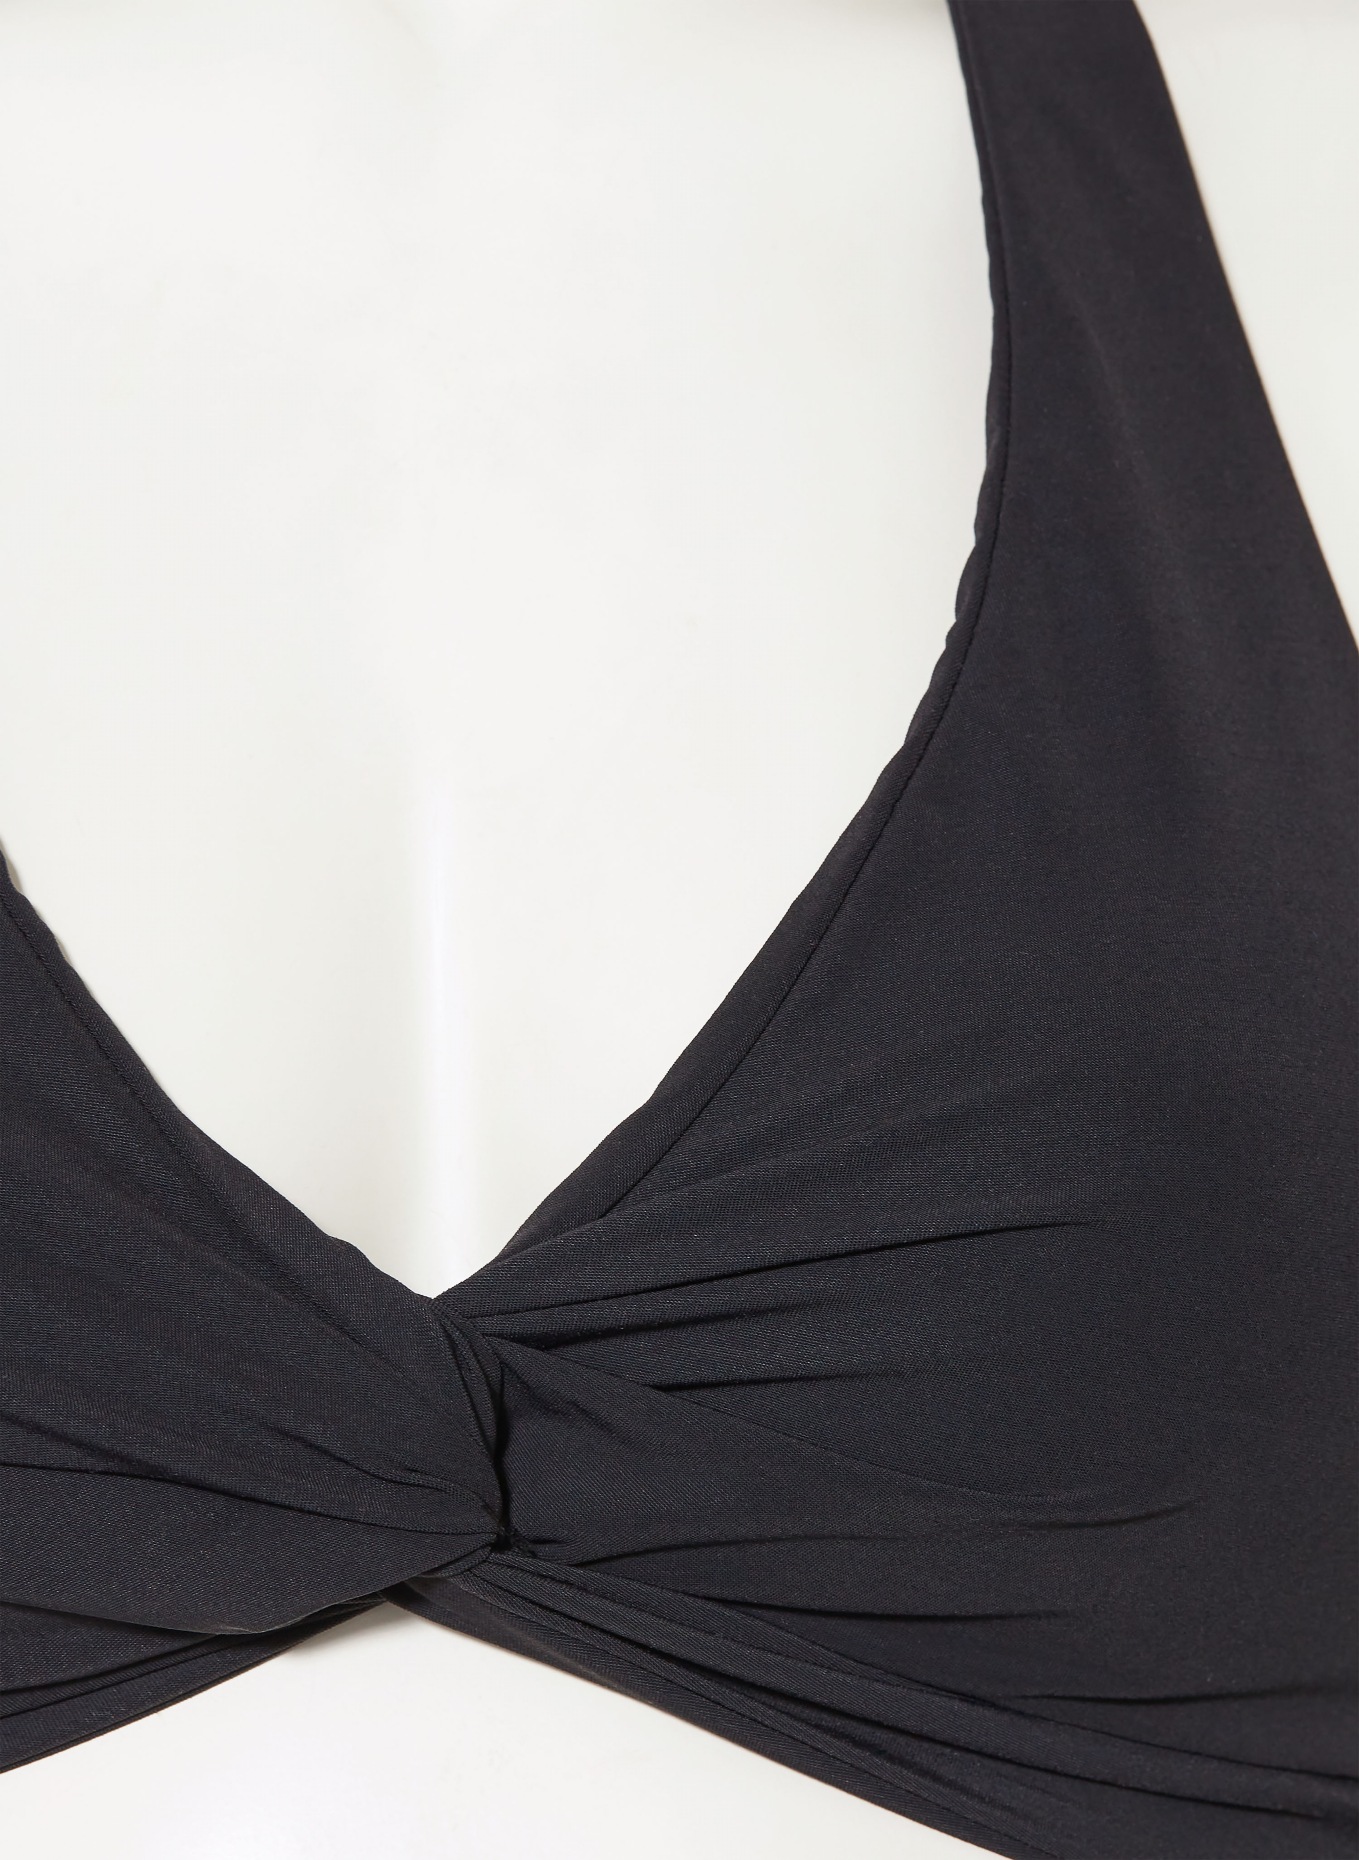 JETS Australia Halter neck bikini top VIT, Color: BLACK (Image 4)